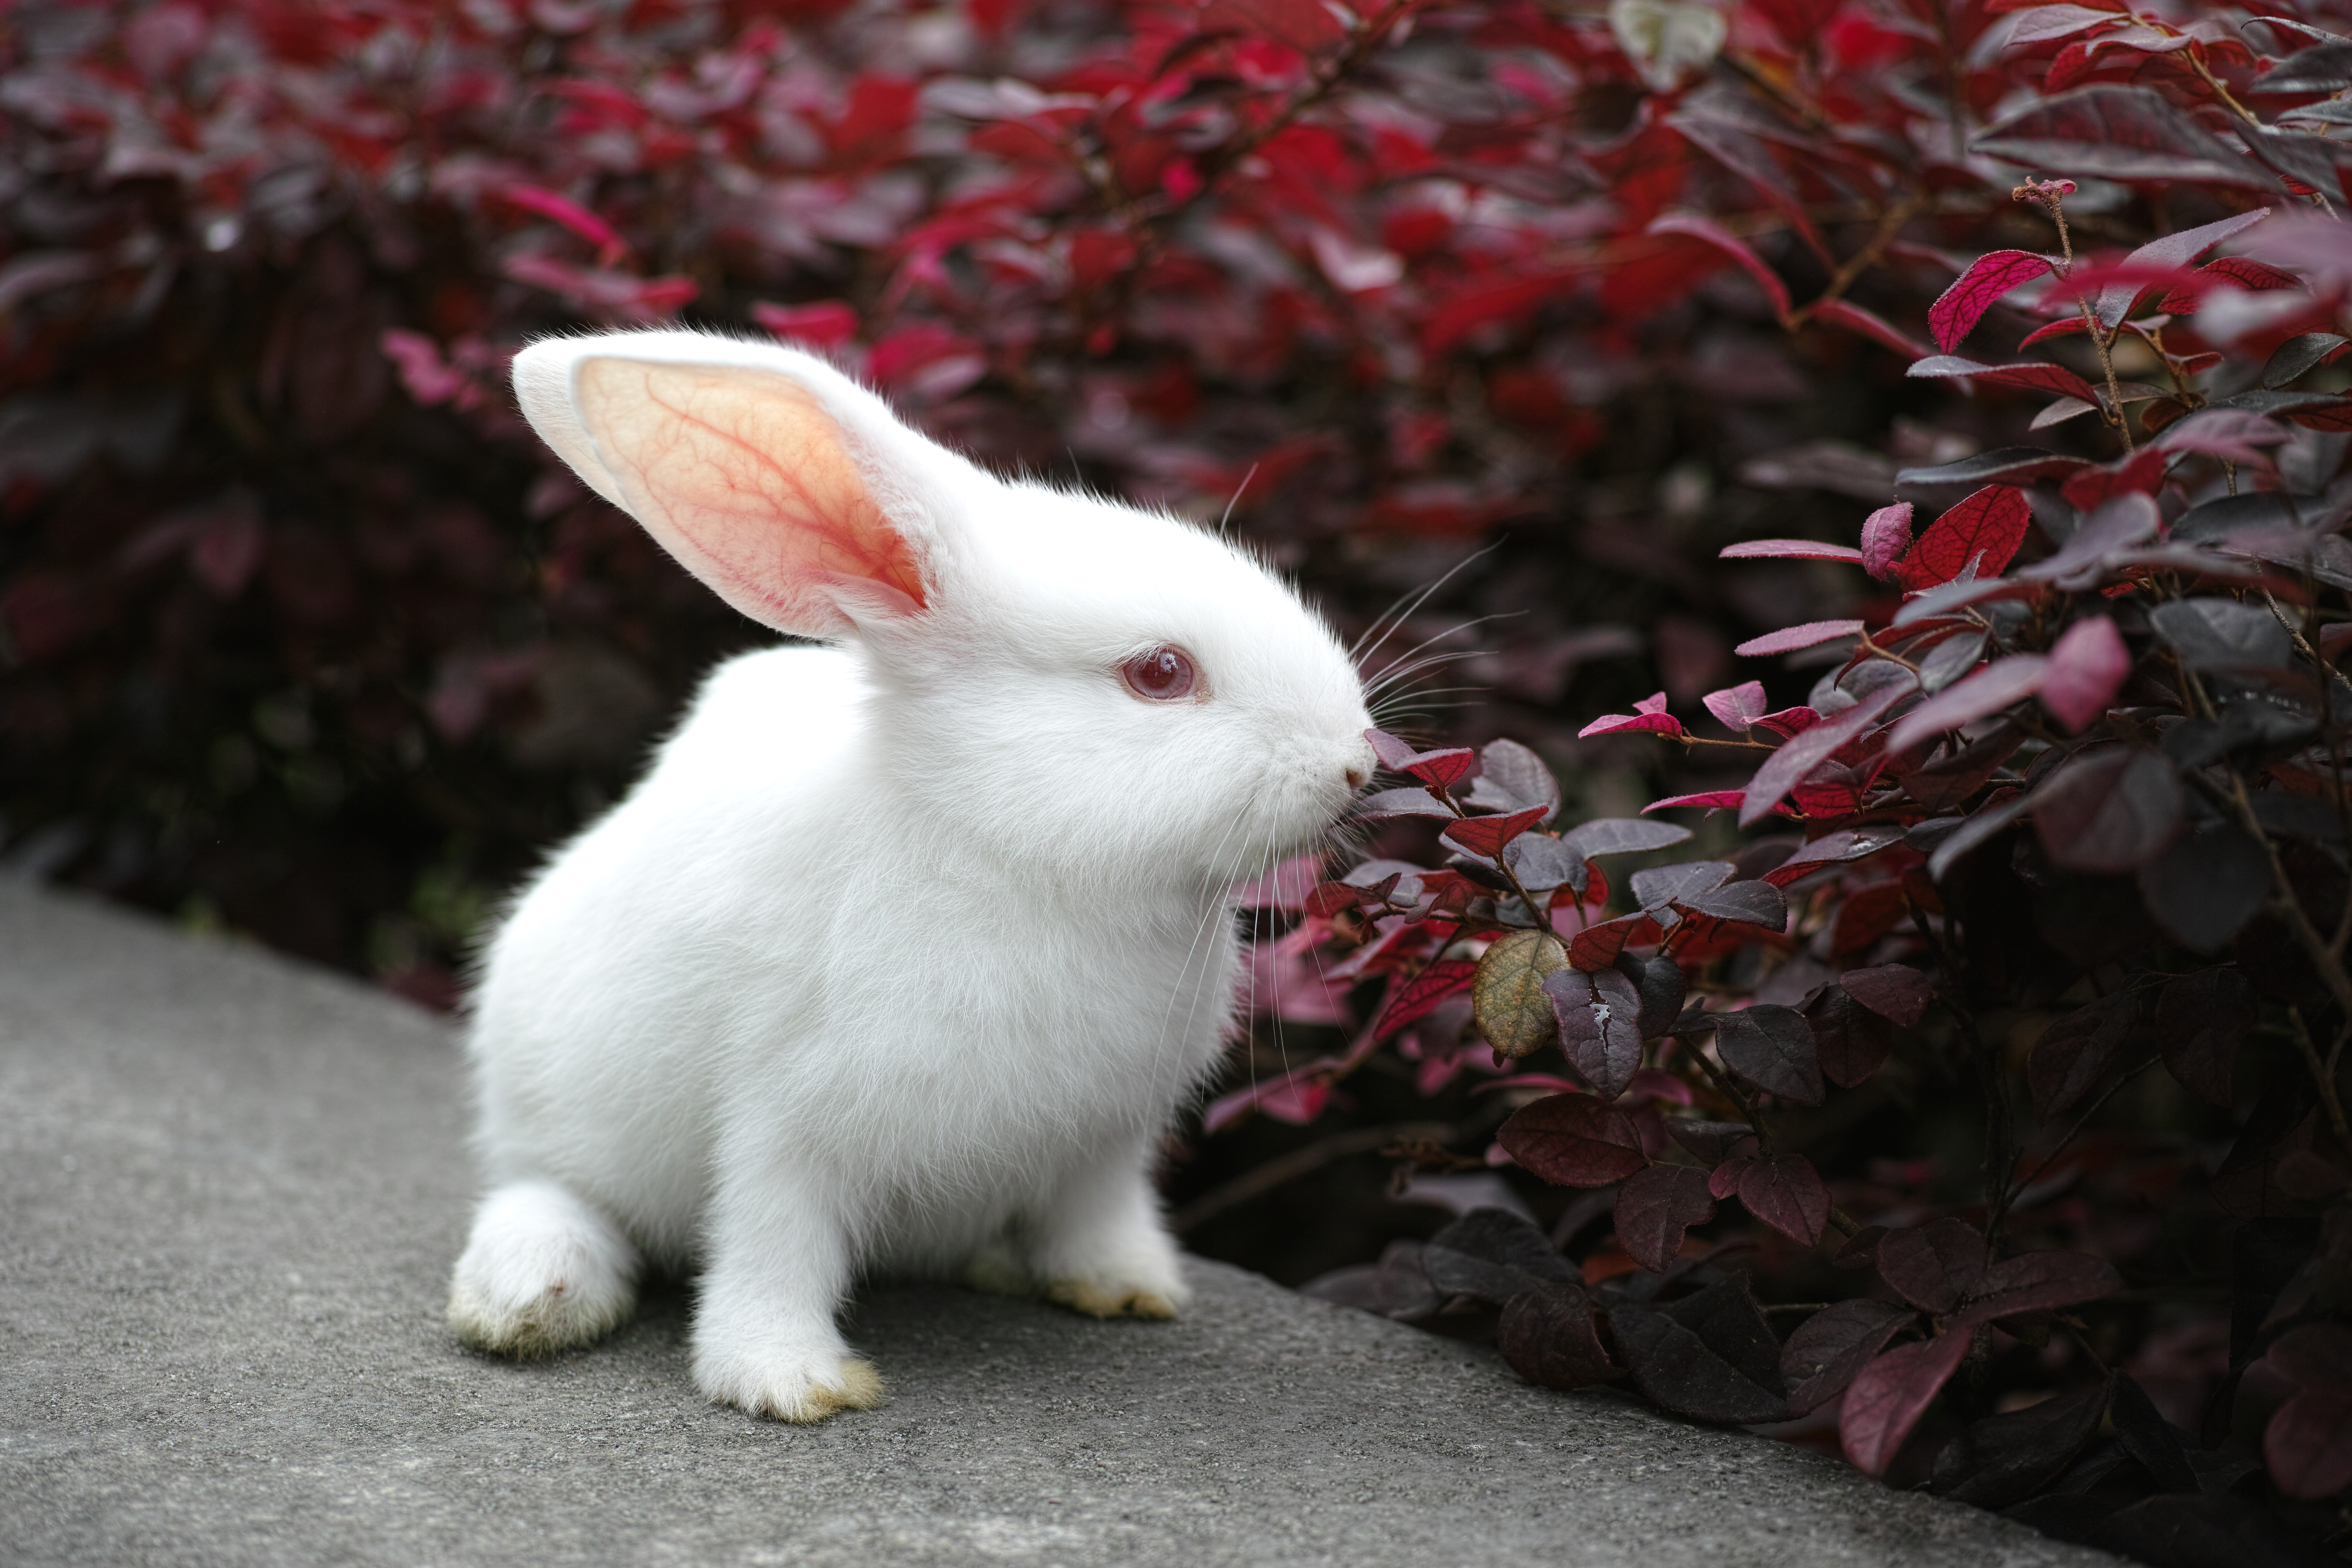 萌萌的小白兔图片1280x800分辨率下载,萌萌的小白兔图片,图片,壁纸